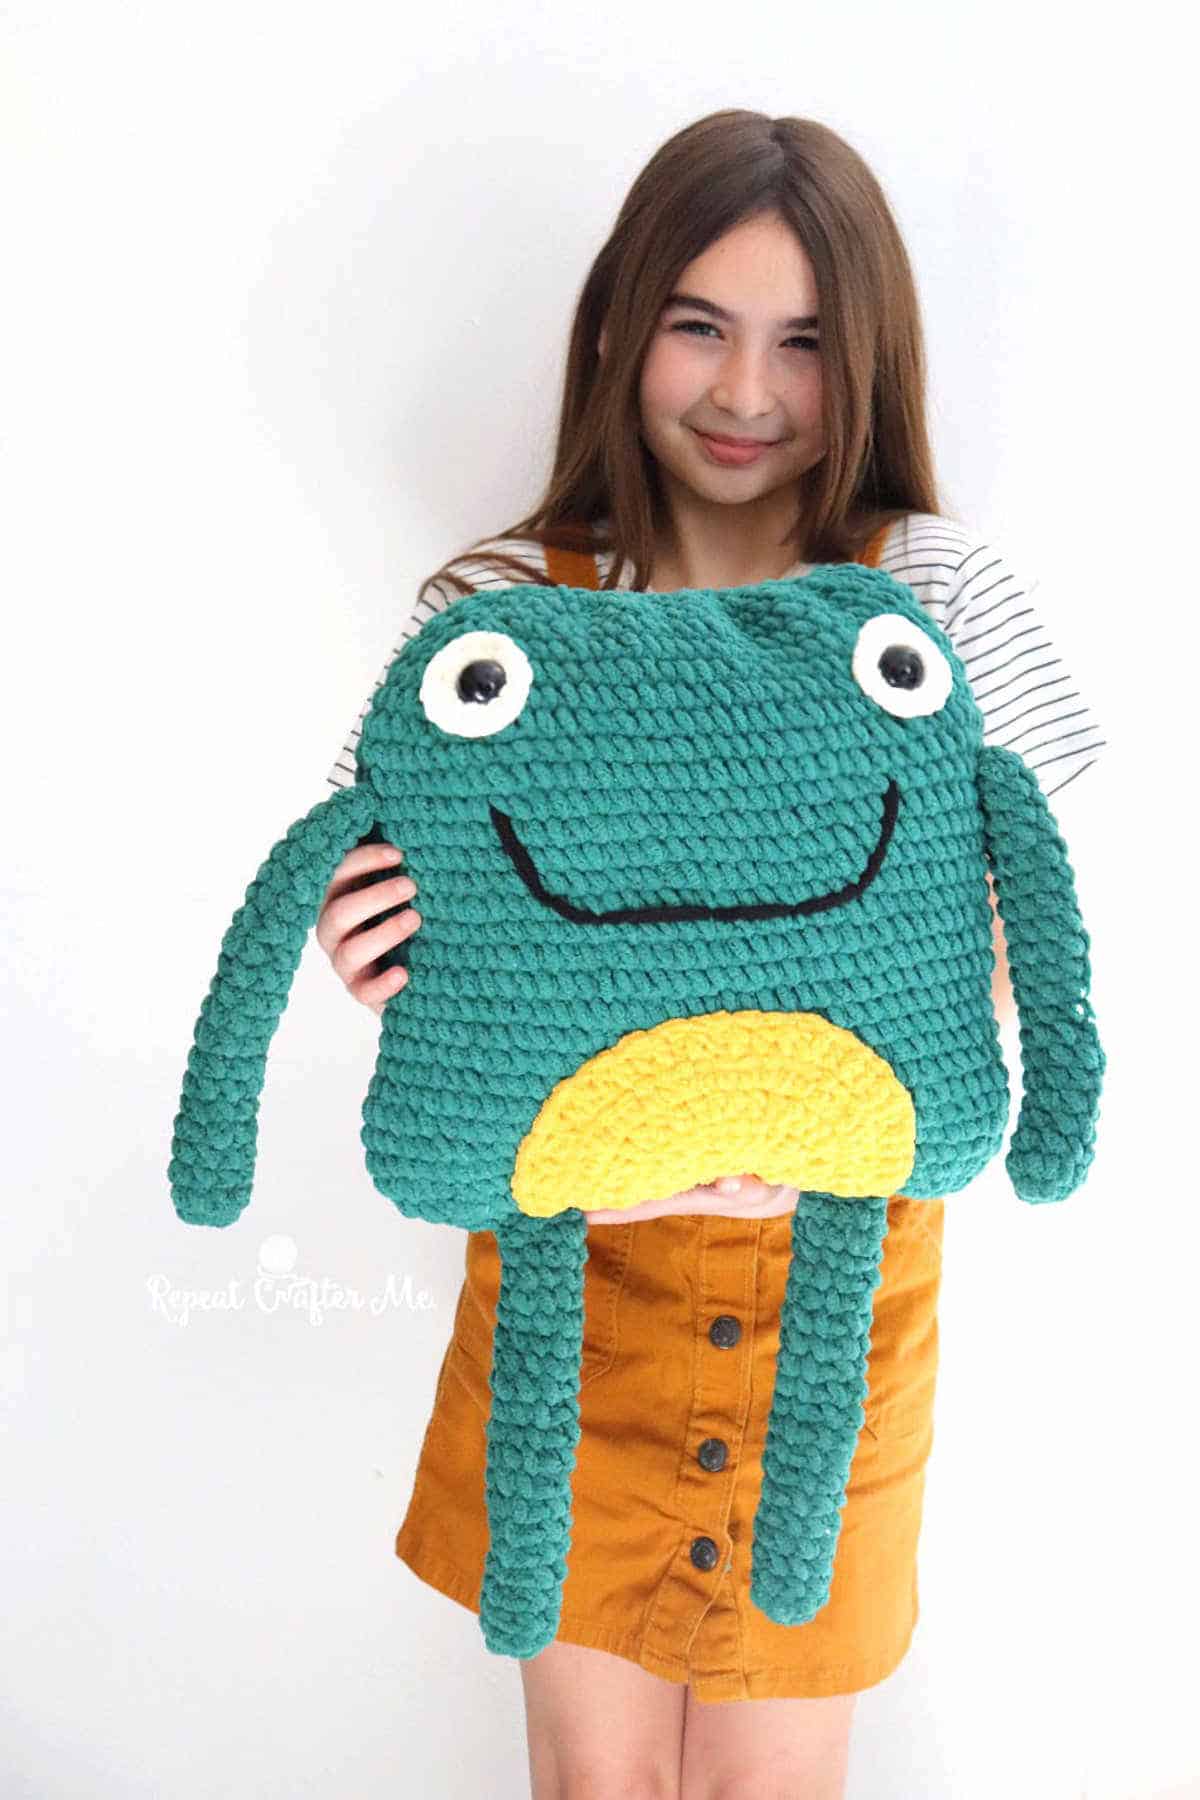 Girl holding crocheted frog pillow.